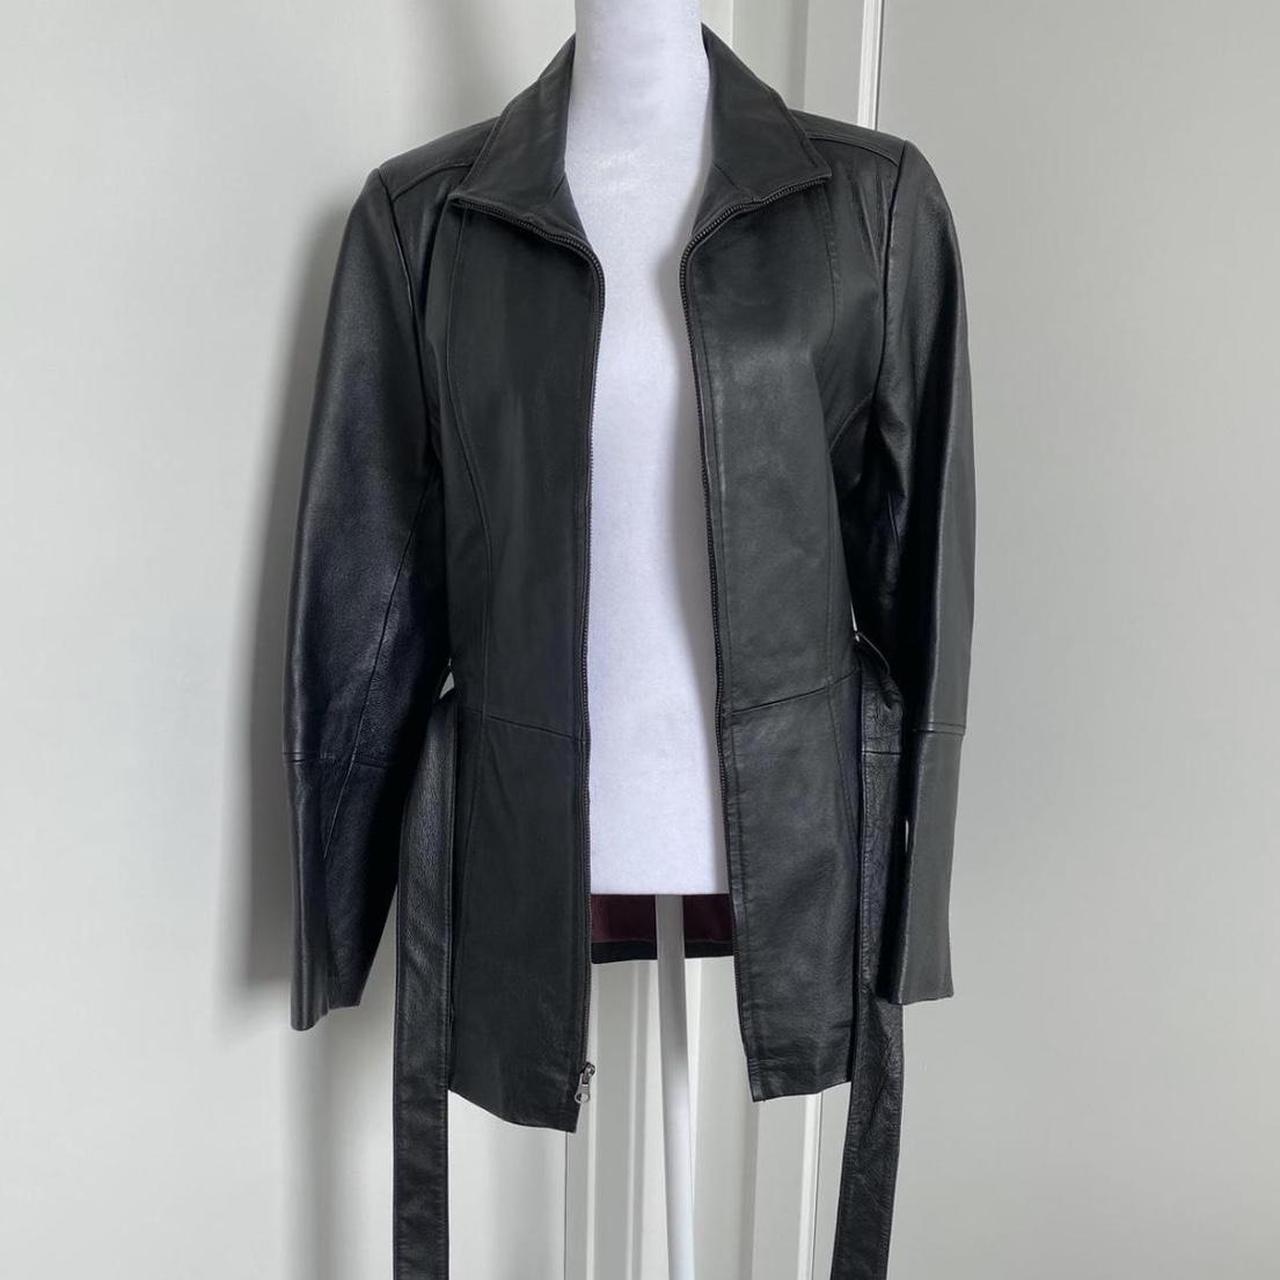 vintage oversized black leather jacket coat with... - Depop